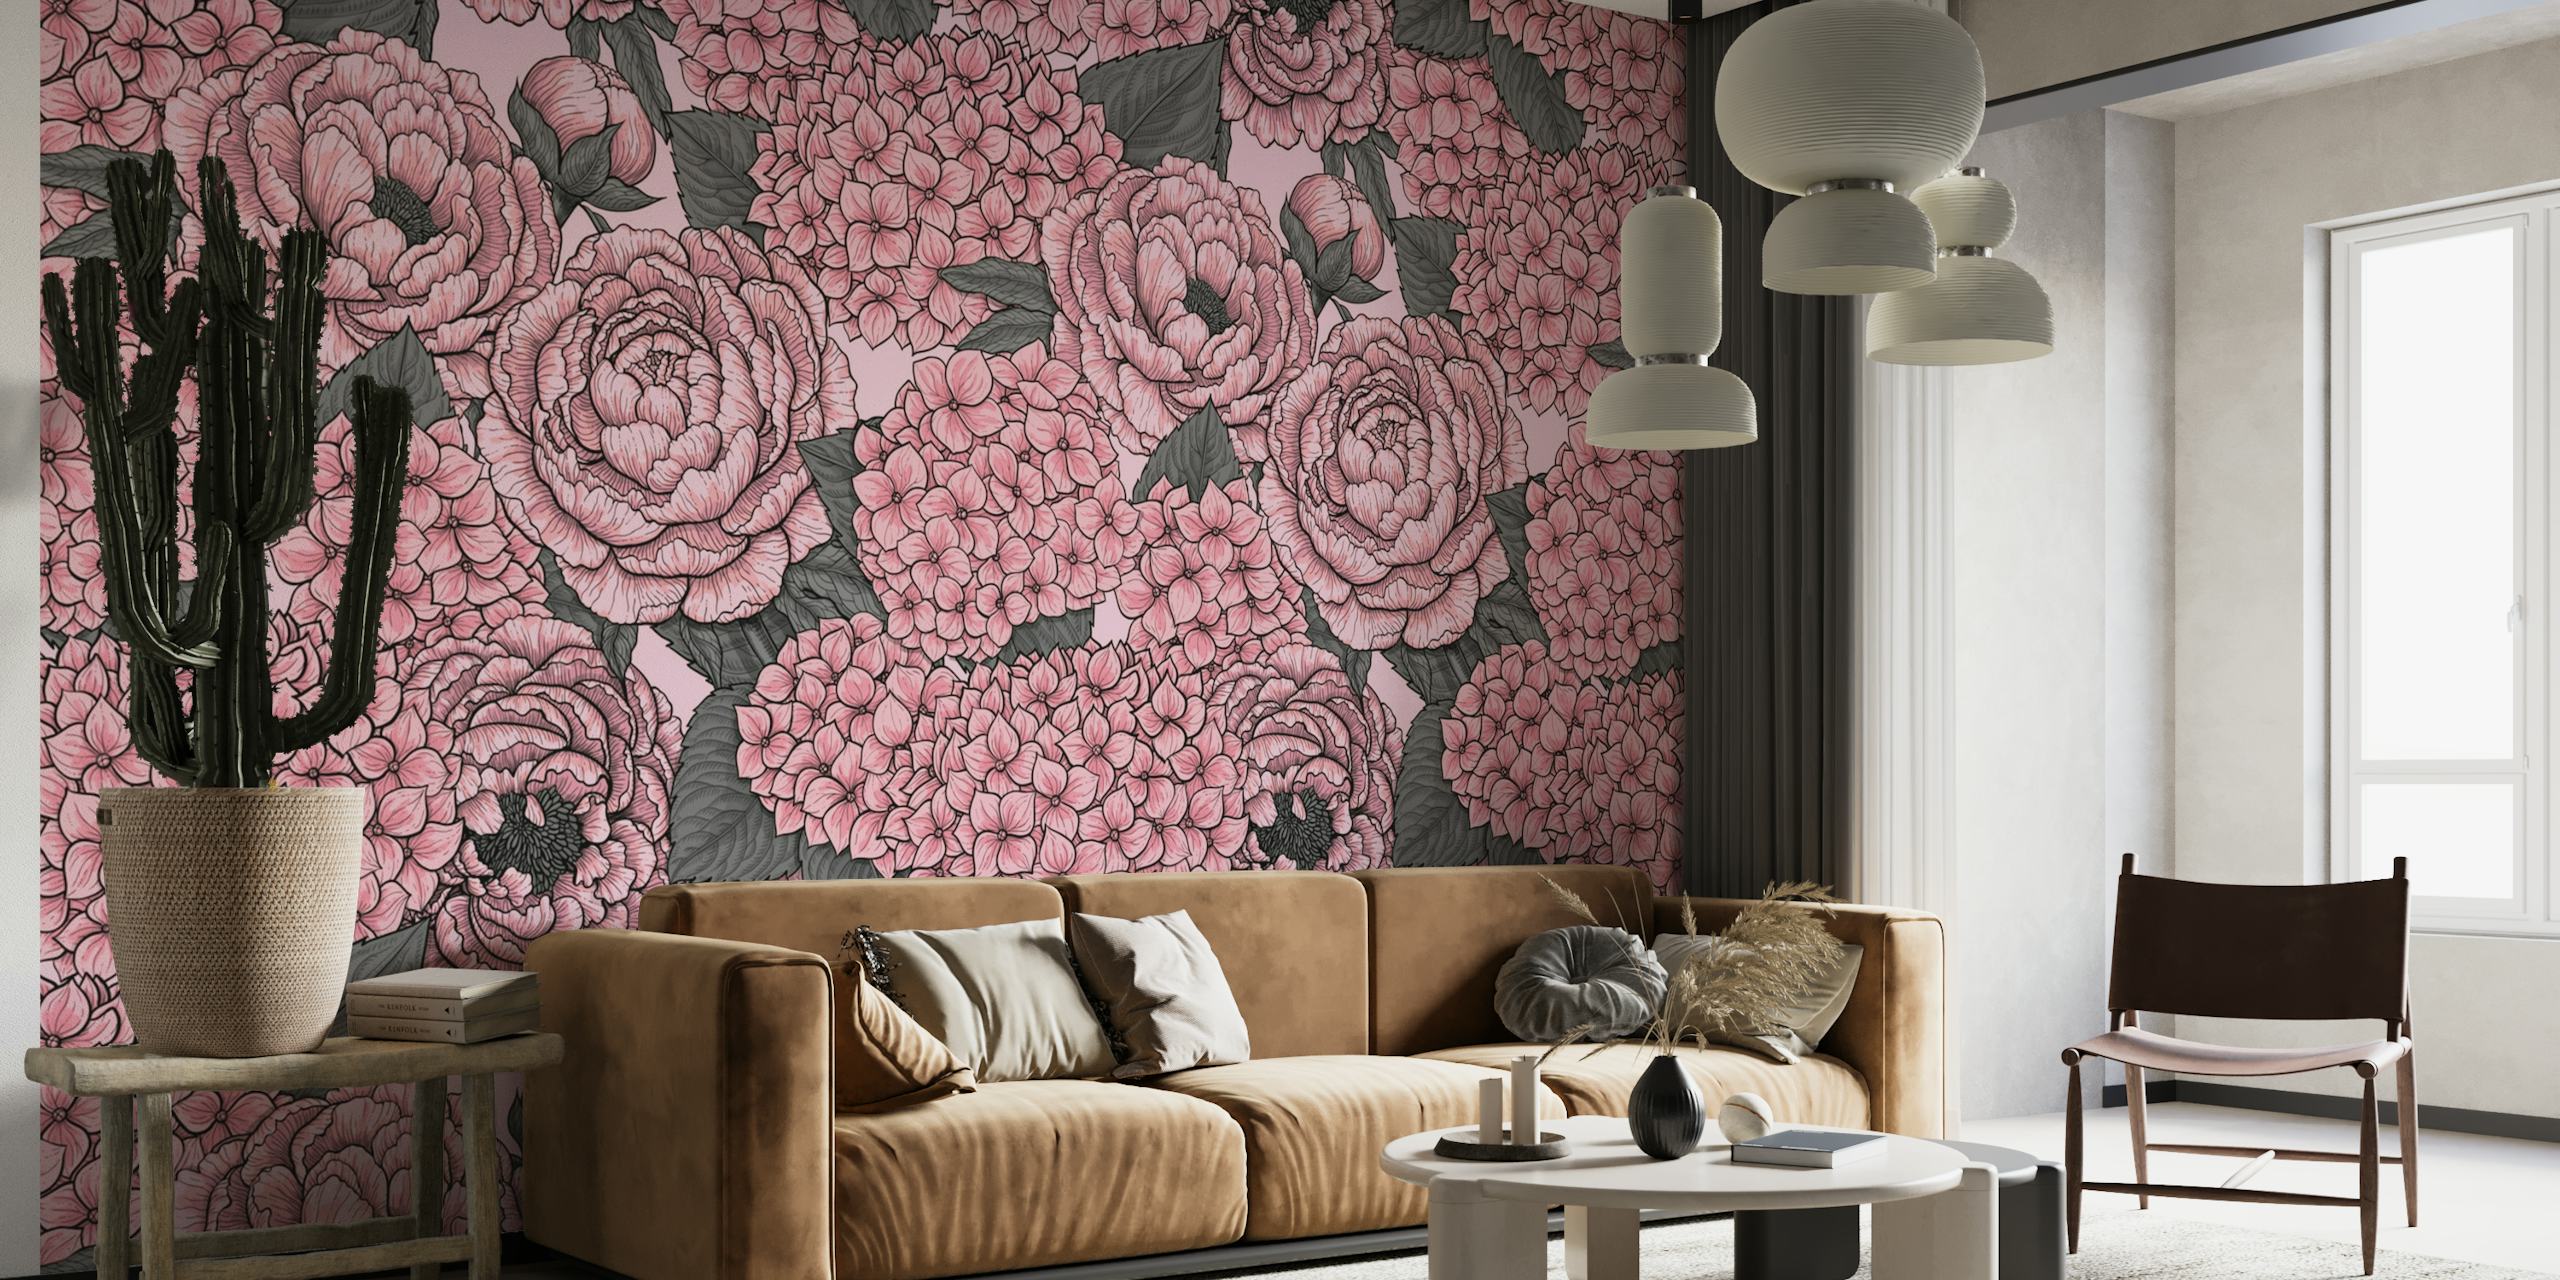 Zidna slika s ružičastim božurima i hortenzijama na teksturiranoj pozadini